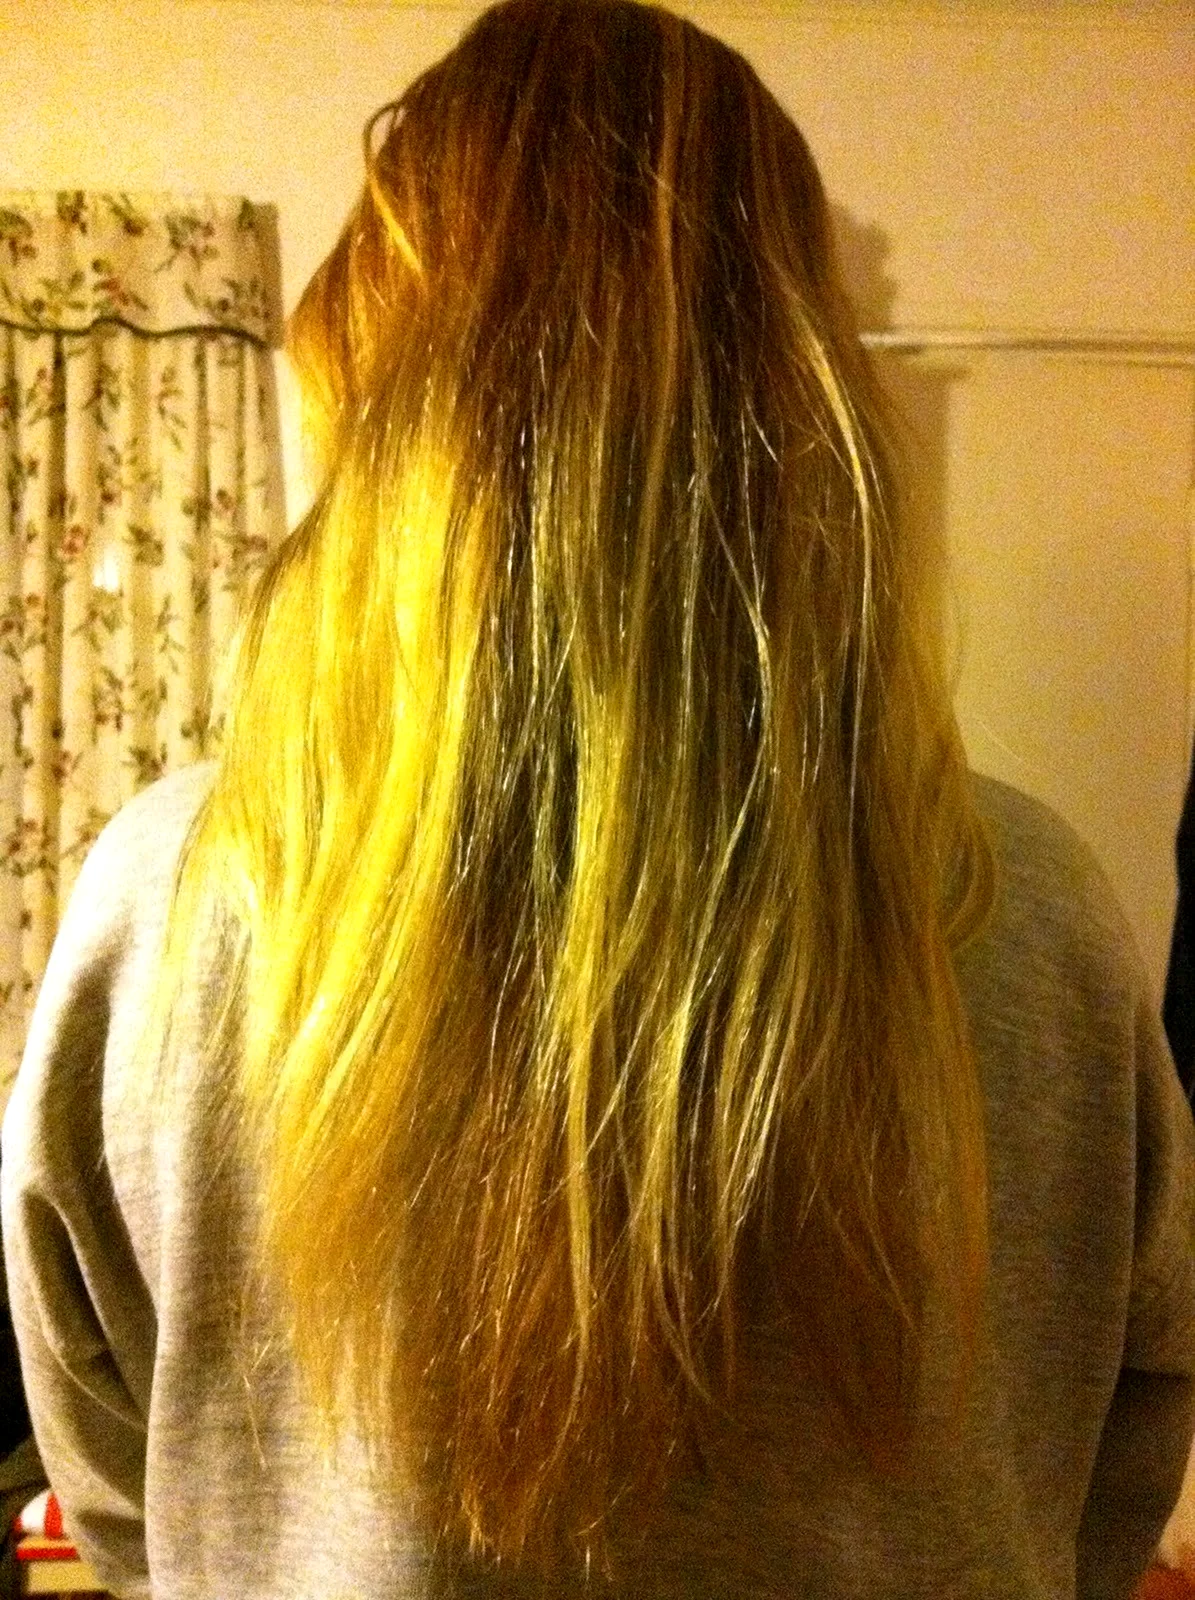 Русые волосы с желтыми кончиками